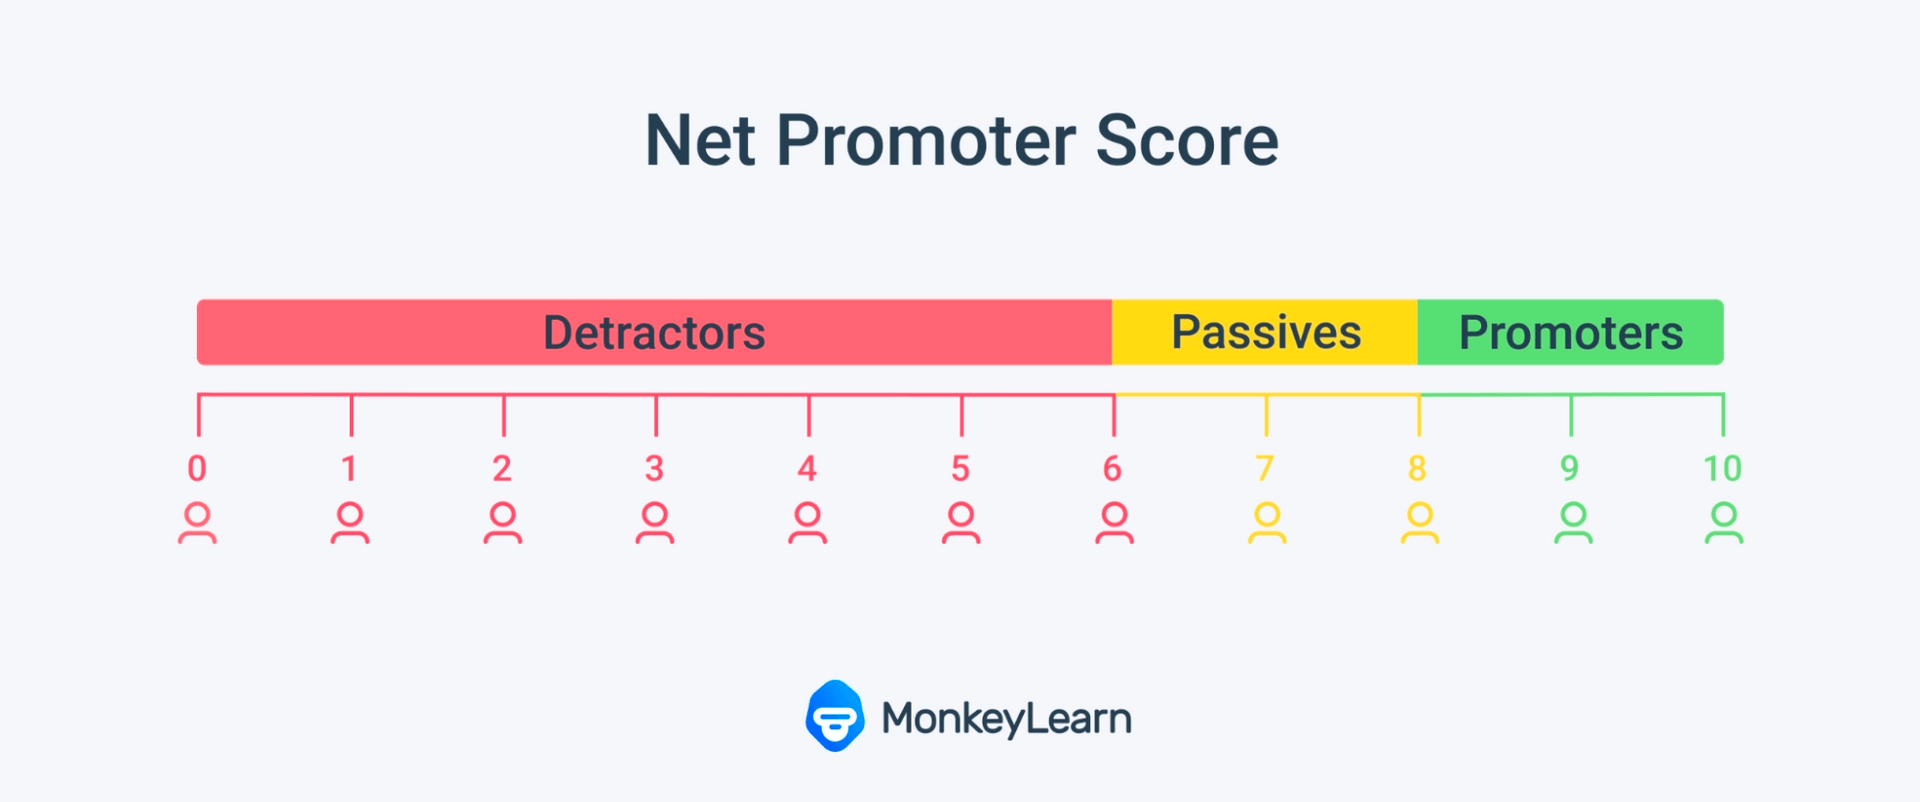 Net Promoter Score. Detractors:0-6. Passives: 7-8. Promoters: 9-10